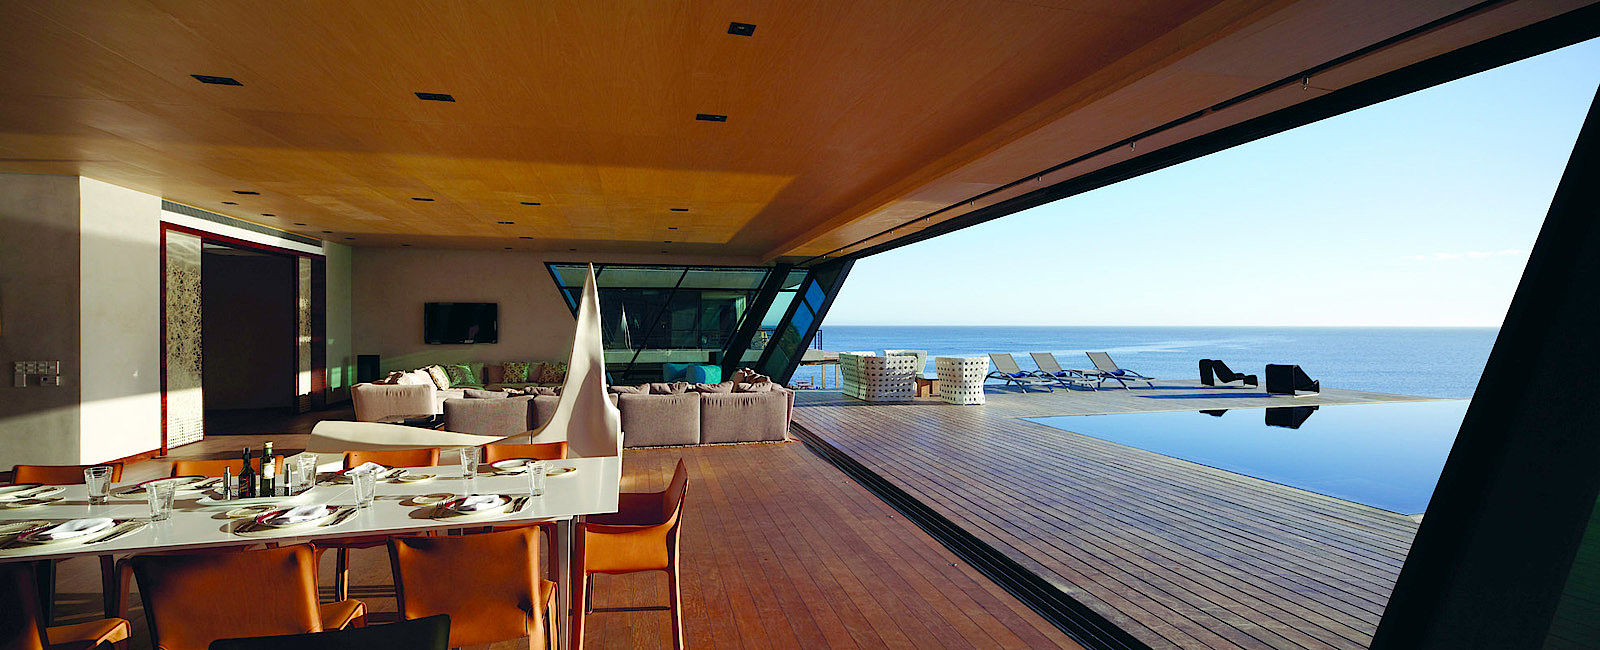 HOTEL TIPPS
 Playa Vik José Ignacio 
 Gemütliches Exklusiv Reisen an der Küste Uruguay's 